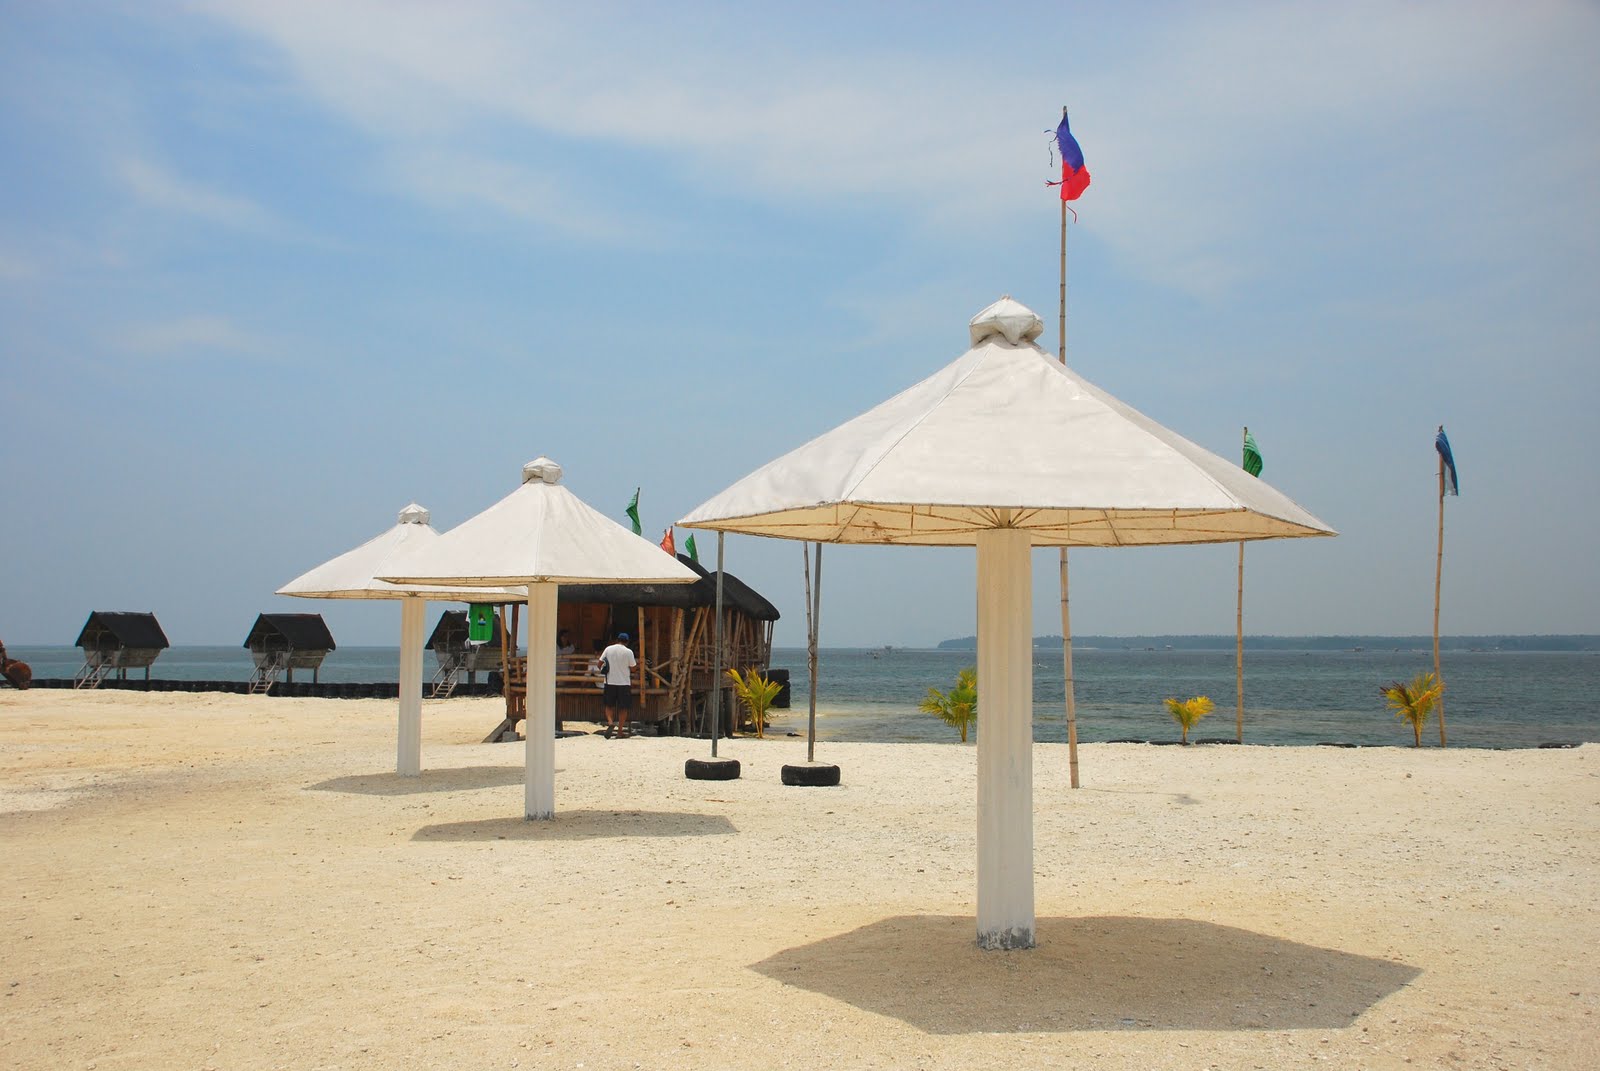 PHILIPPINEN REISEN - INSELN - MINDANAO - Touristische Beschreibung der Mindanao Insel Passig